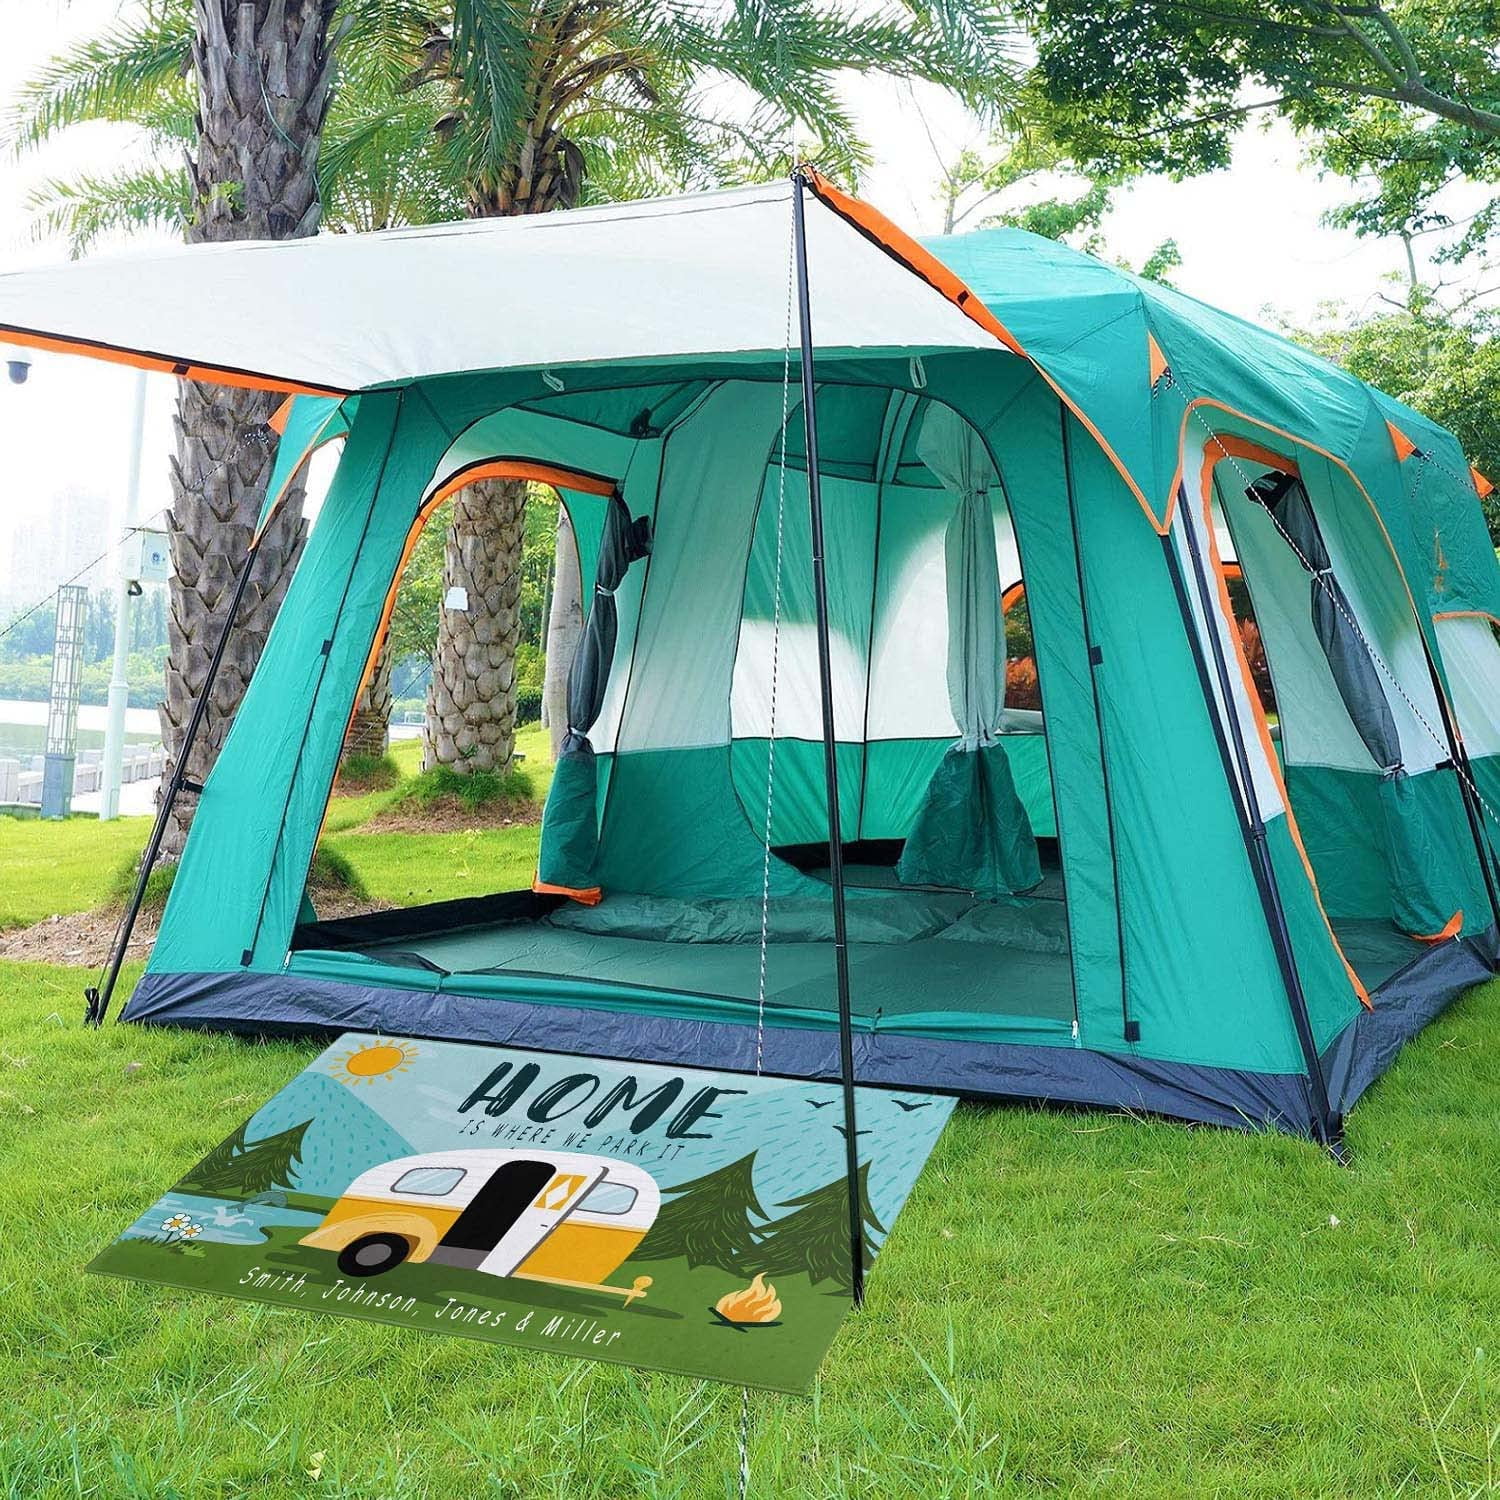 Comfoyar Camper RV Door Mat, Home is Where We Park It Camping Floor Mats - Door  Mats, Facebook Marketplace